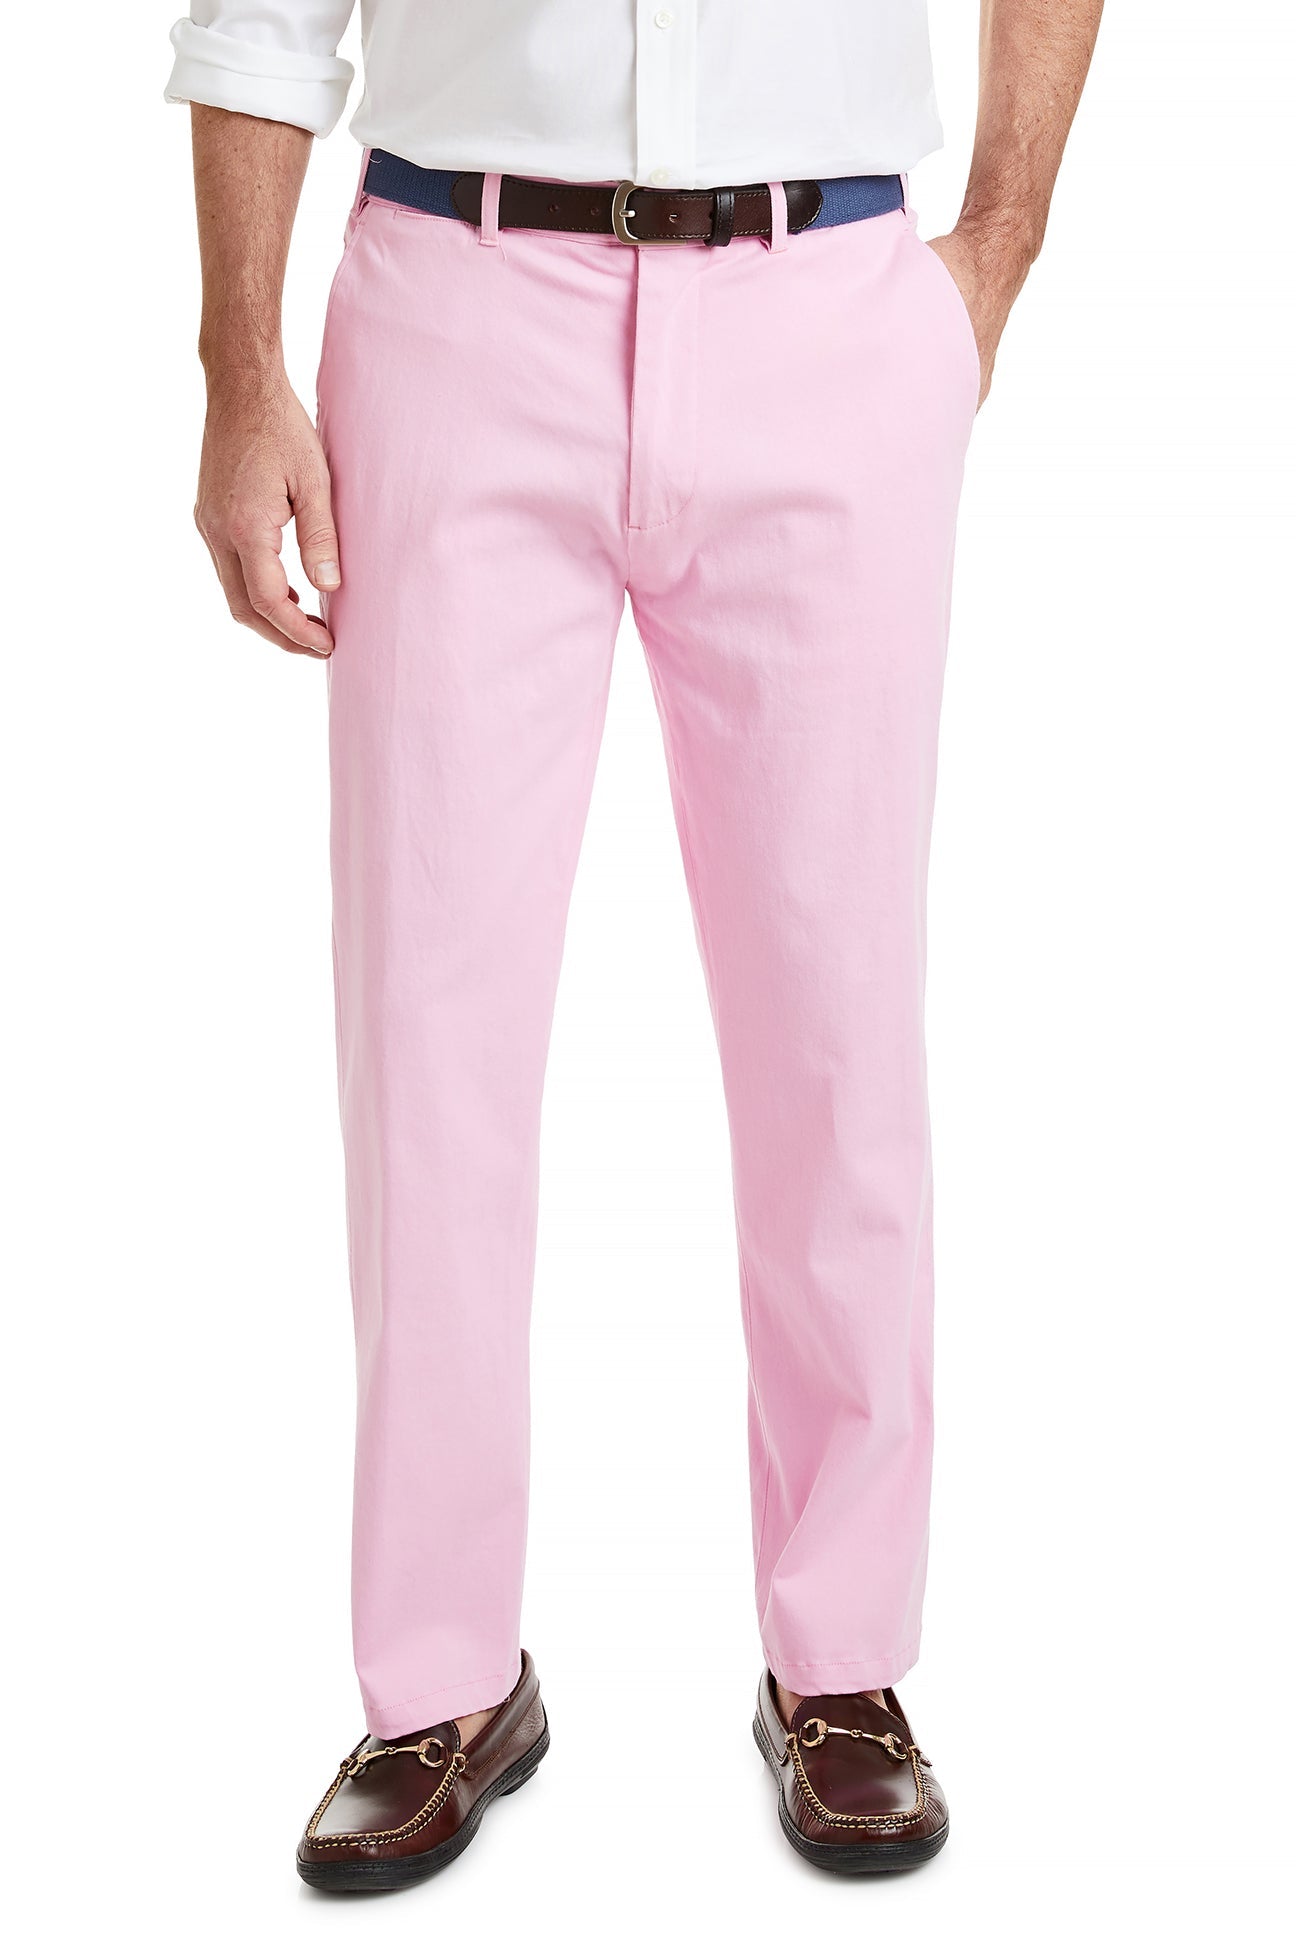 Buy Van Heusen Pink Trousers Online  688321  Van Heusen